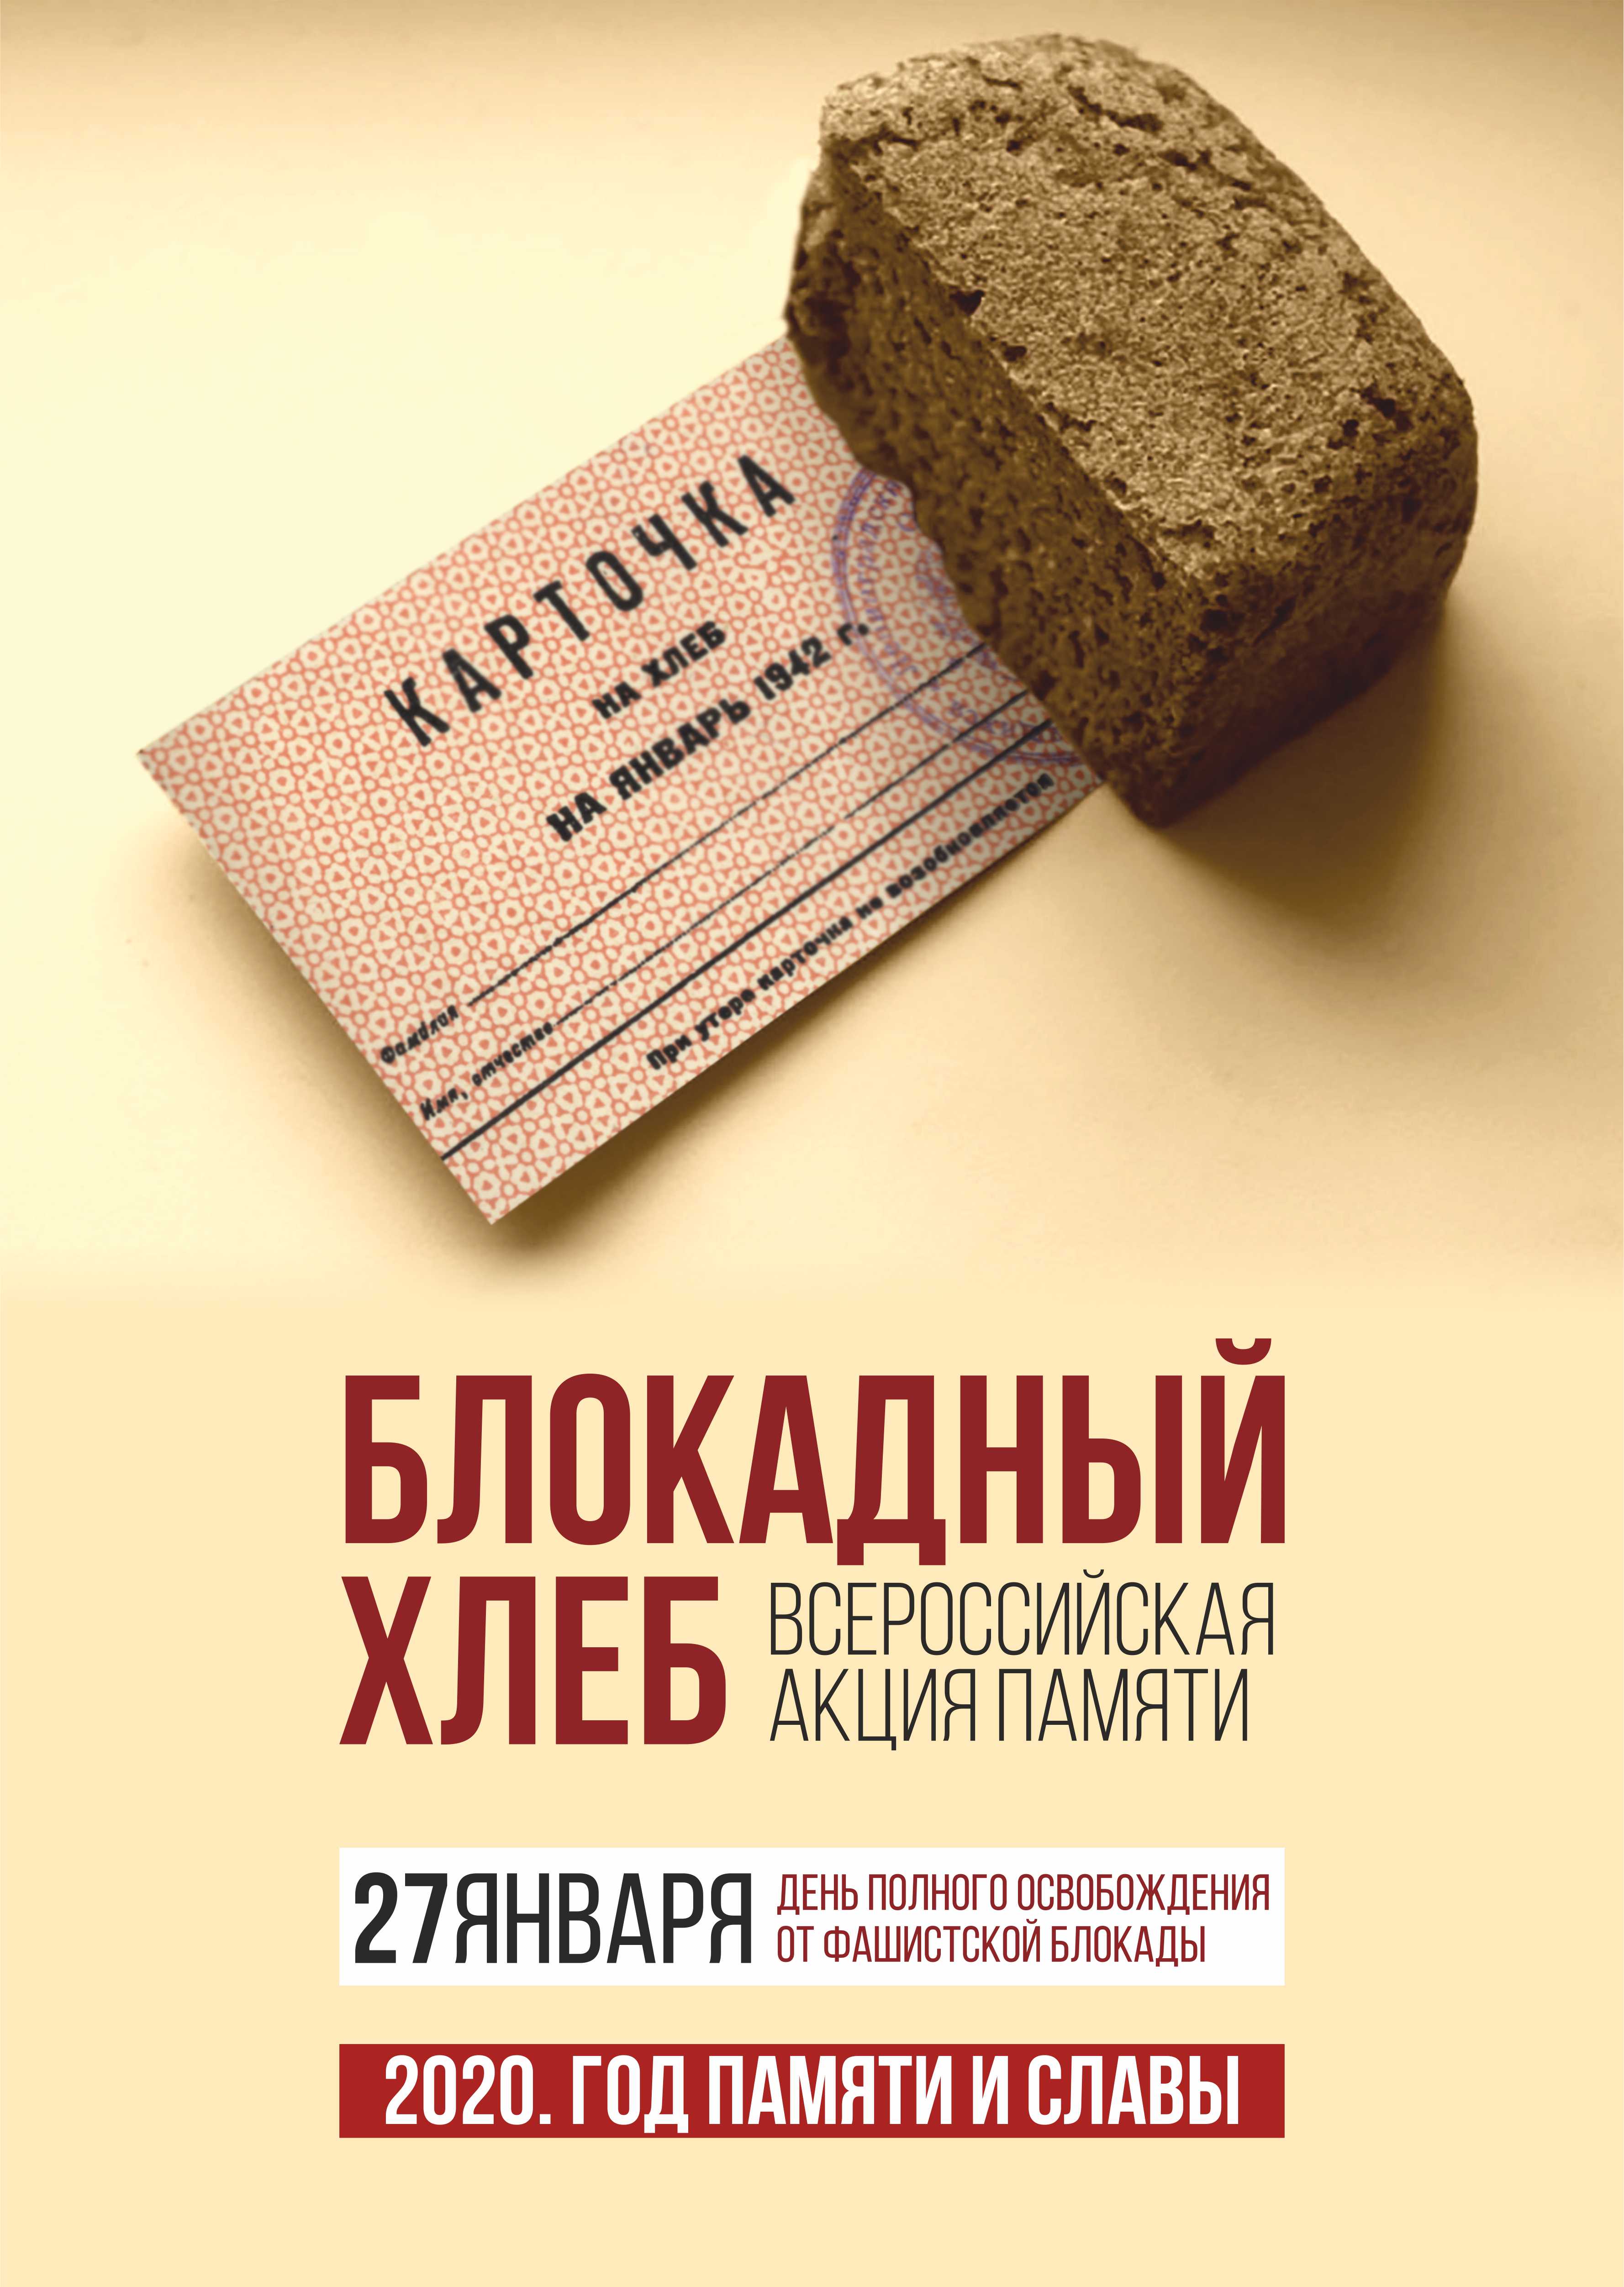 Мероприятия в рамках Всероссийской акции «Блокадный хлеб»